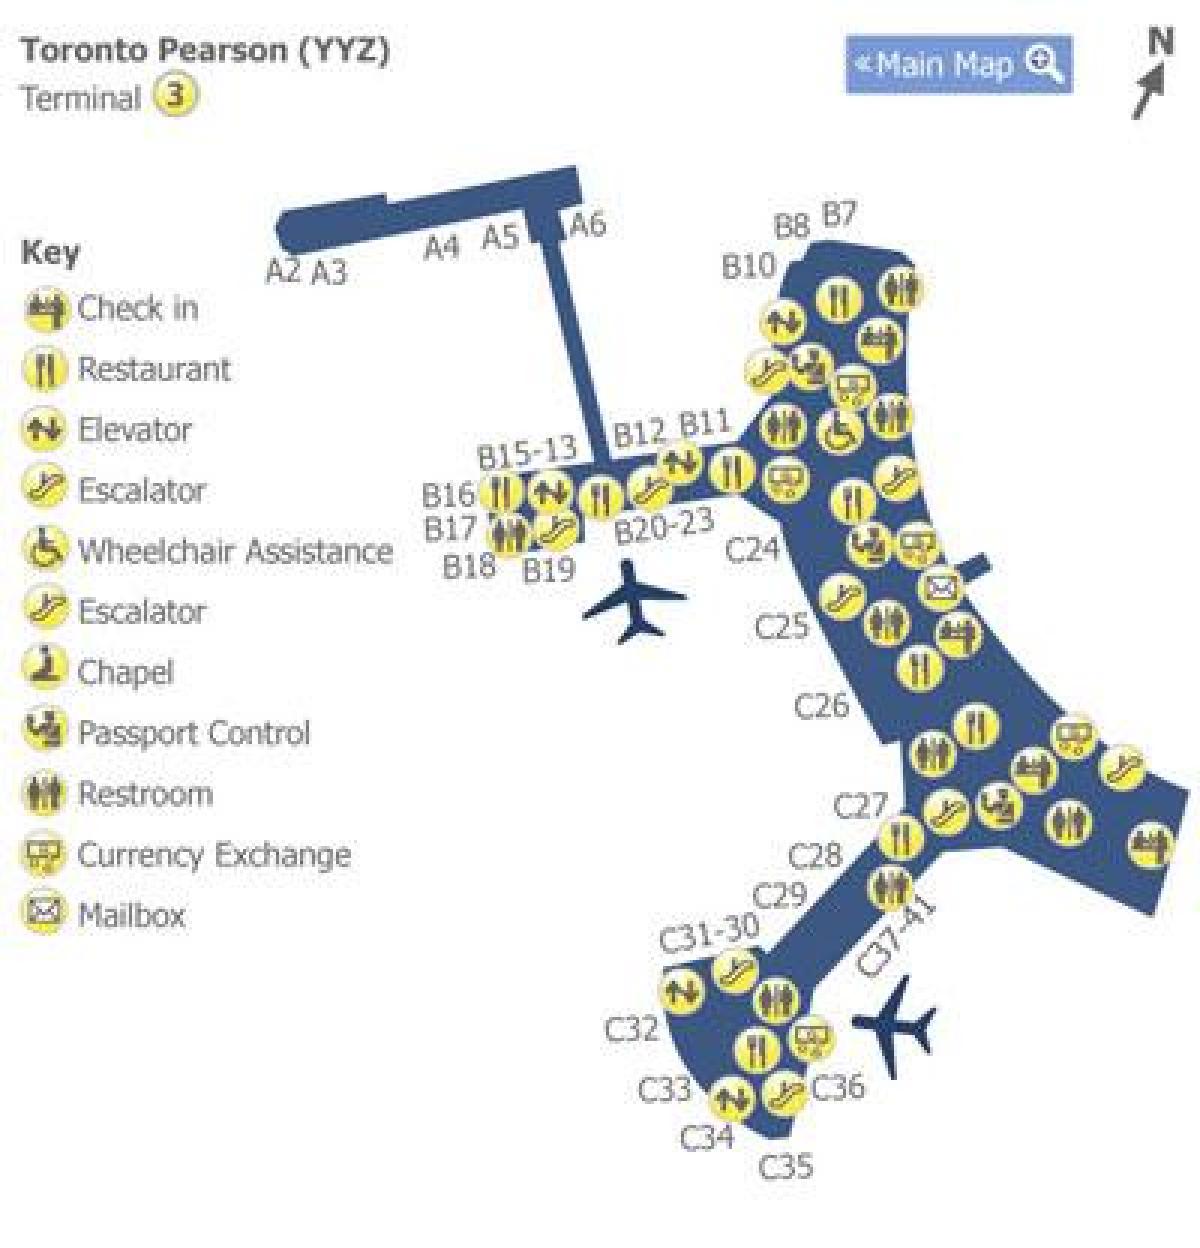 Mapu Toronto Pearson airport terminal 3